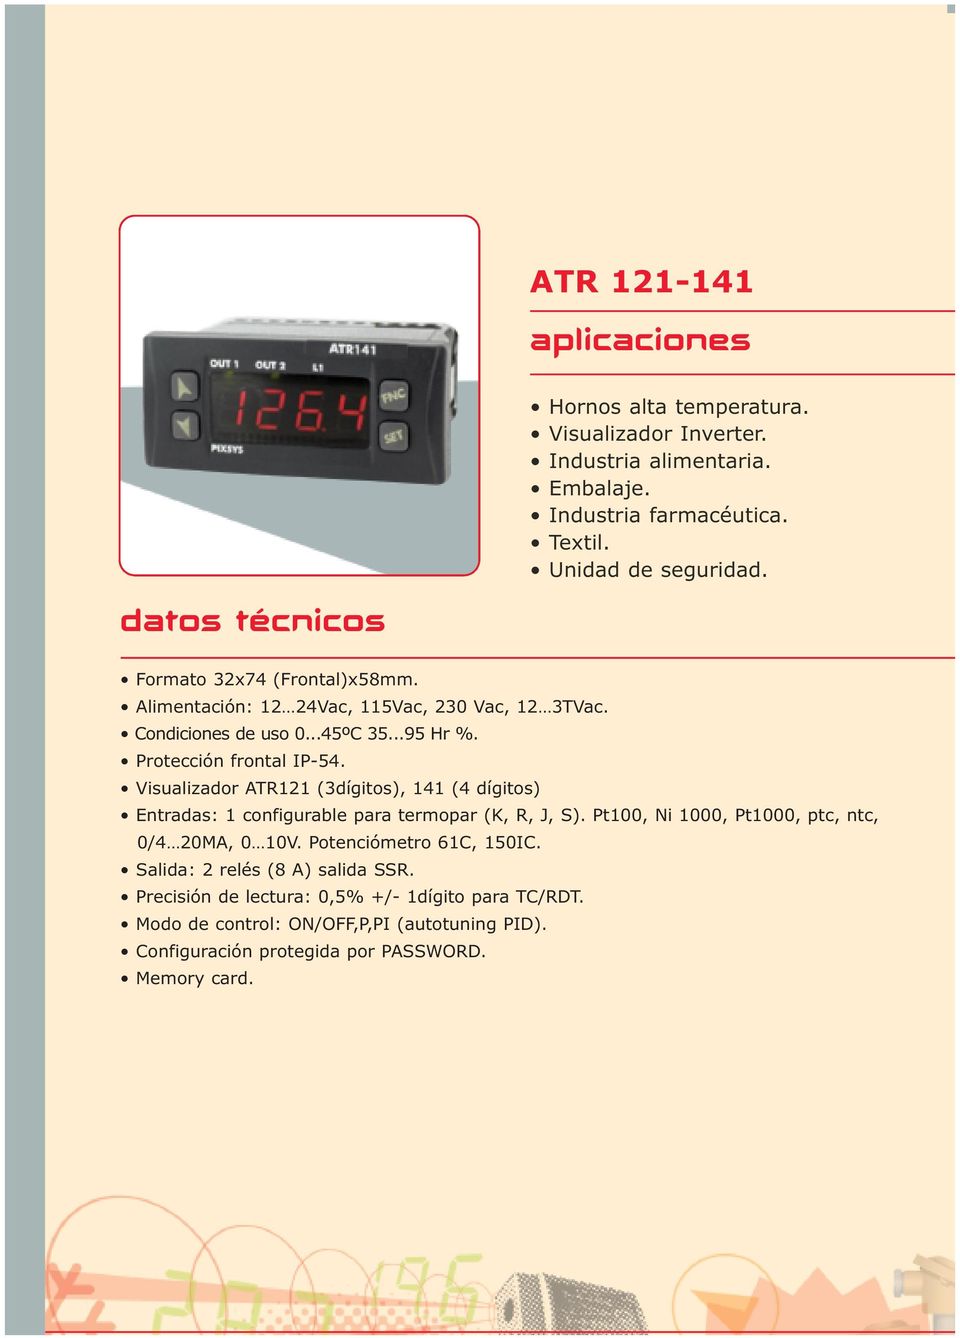 Visualizador ATR121 (3dígitos), 141 (4 dígitos) Entradas: 1 configurable para termopar (K, R, J, S). Pt100, Ni 1000, Pt1000, ptc, ntc, 0/4 20MA, 0 10V.